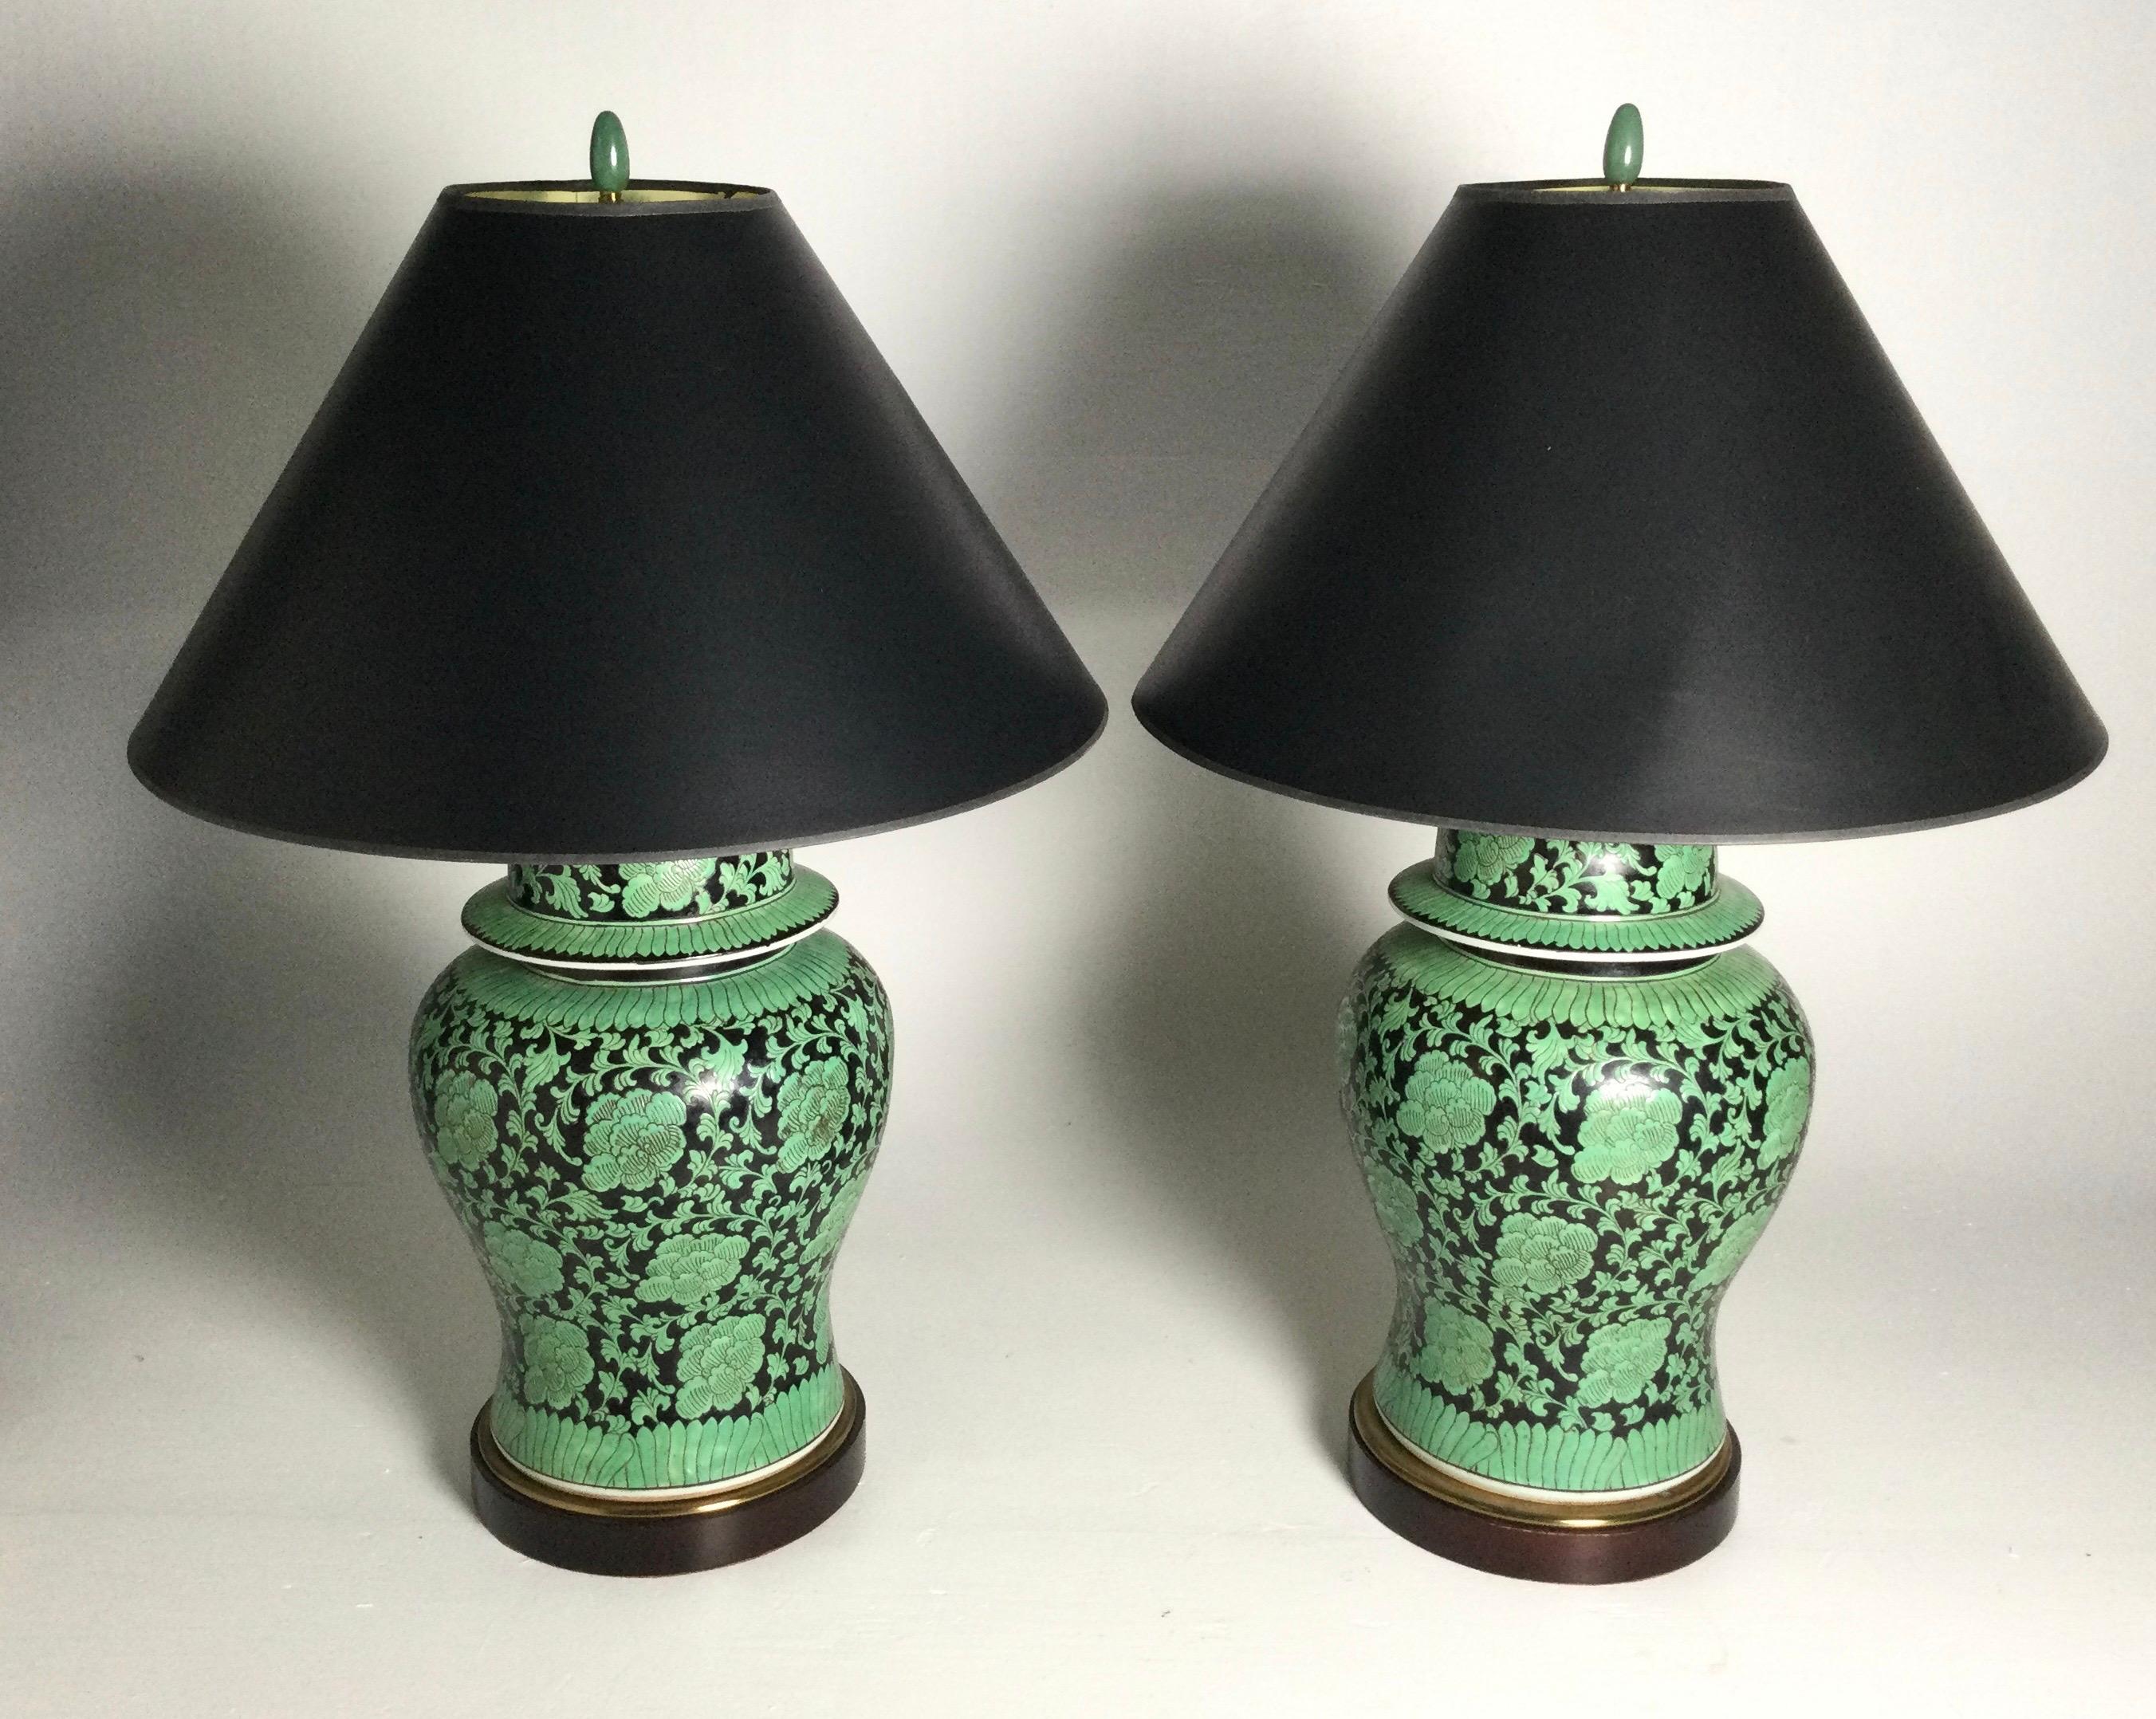 Une grande paire d'urnes noires et vertes en forme de pot à gingembre qui servent maintenant de lampes. Les porcelaines chinoises datent du milieu du 20e siècle et constituent une paire de lampes étonnante. Les abat-jour sont utilisés à des fins